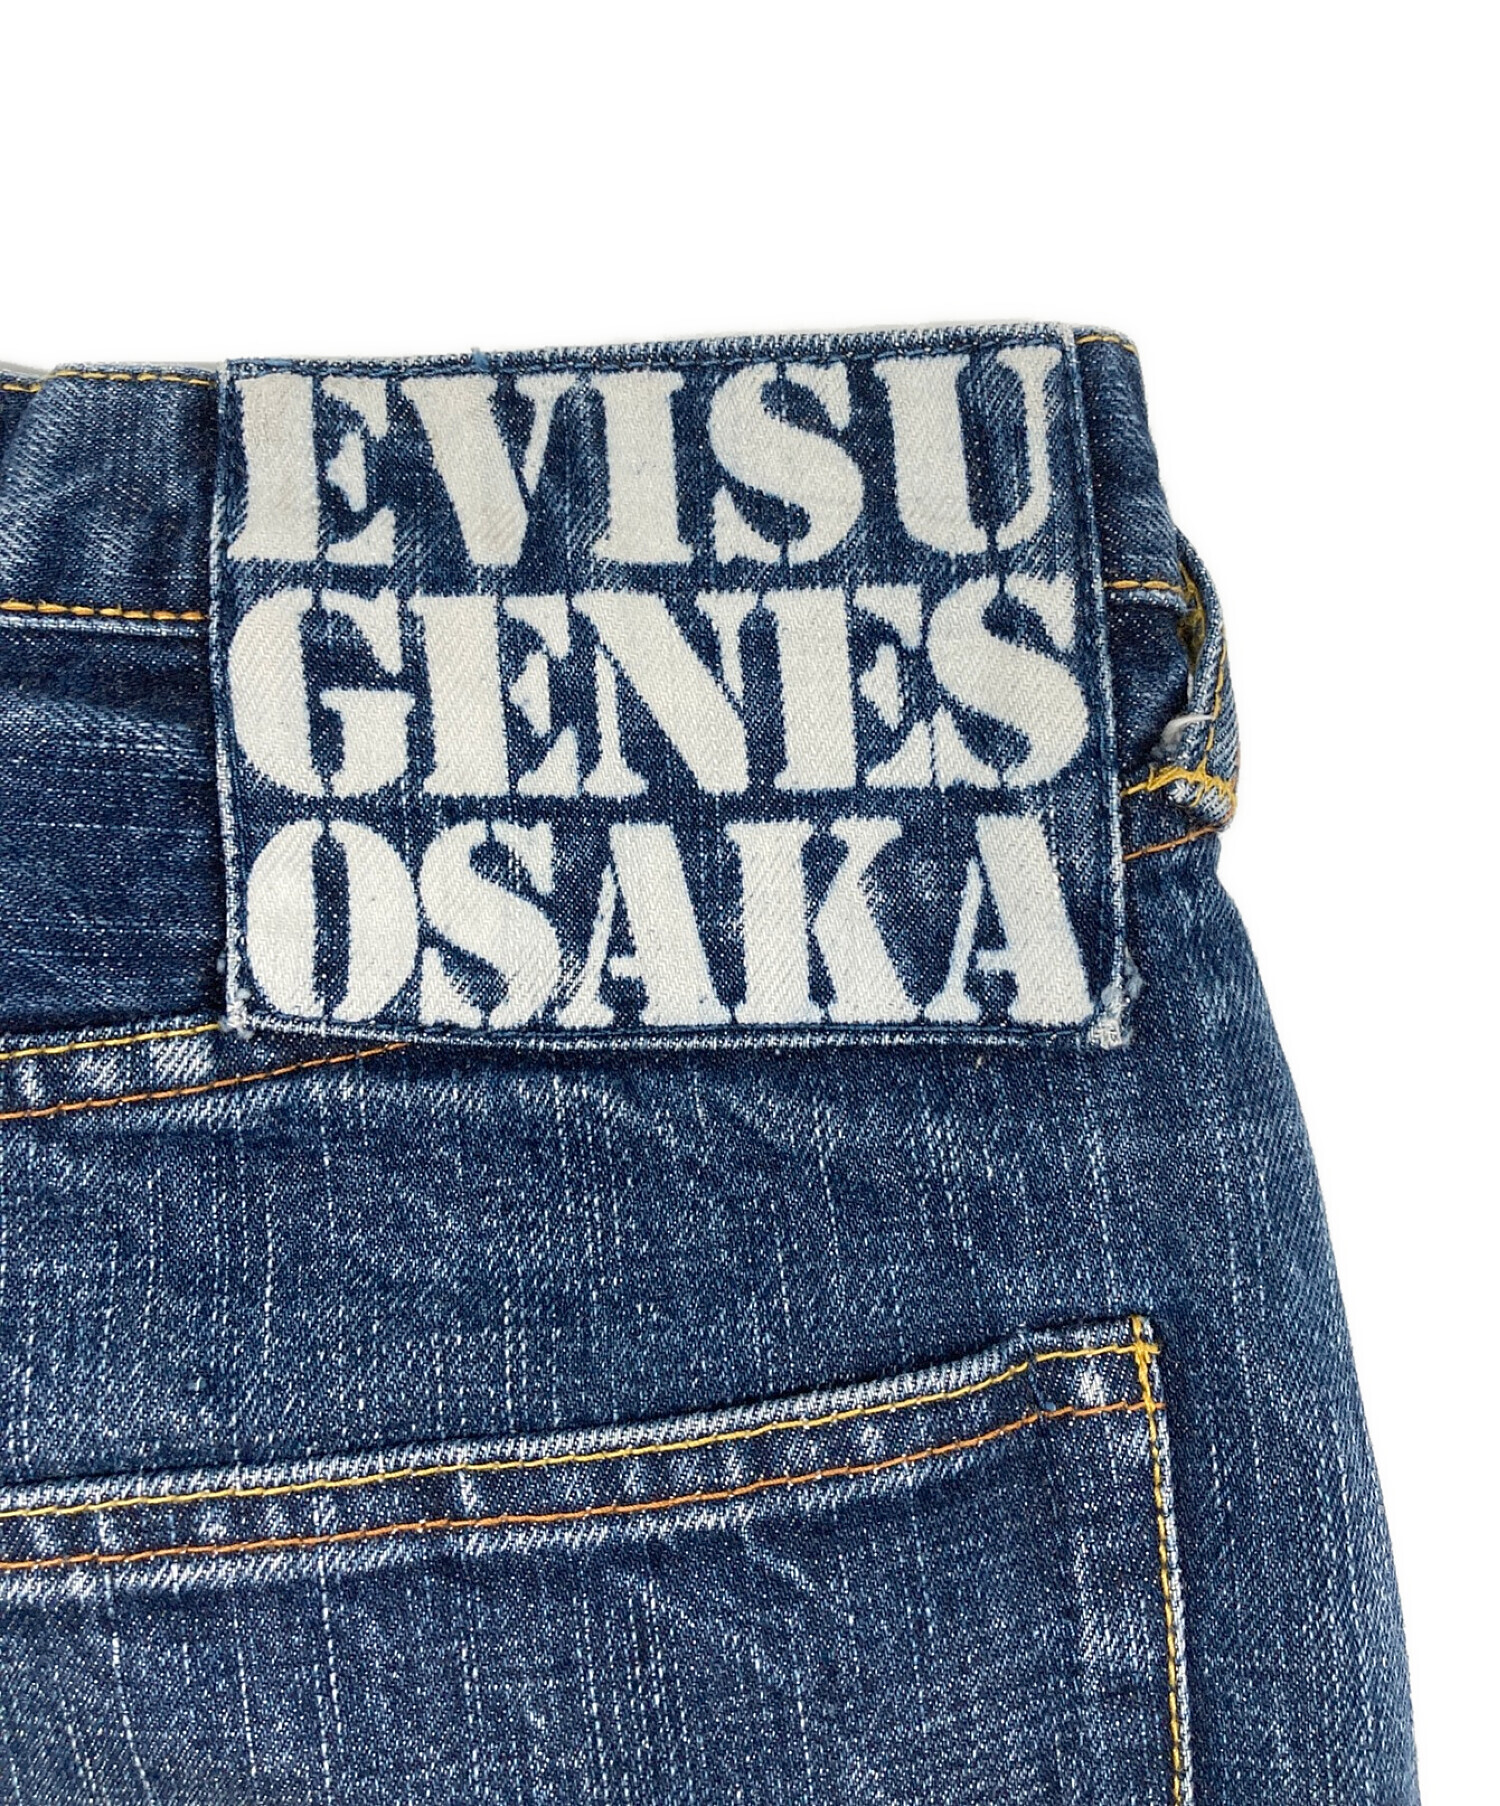 中古・古着通販】Evisu Jeans (エヴィスジーンズ) 恵比寿様刺繍